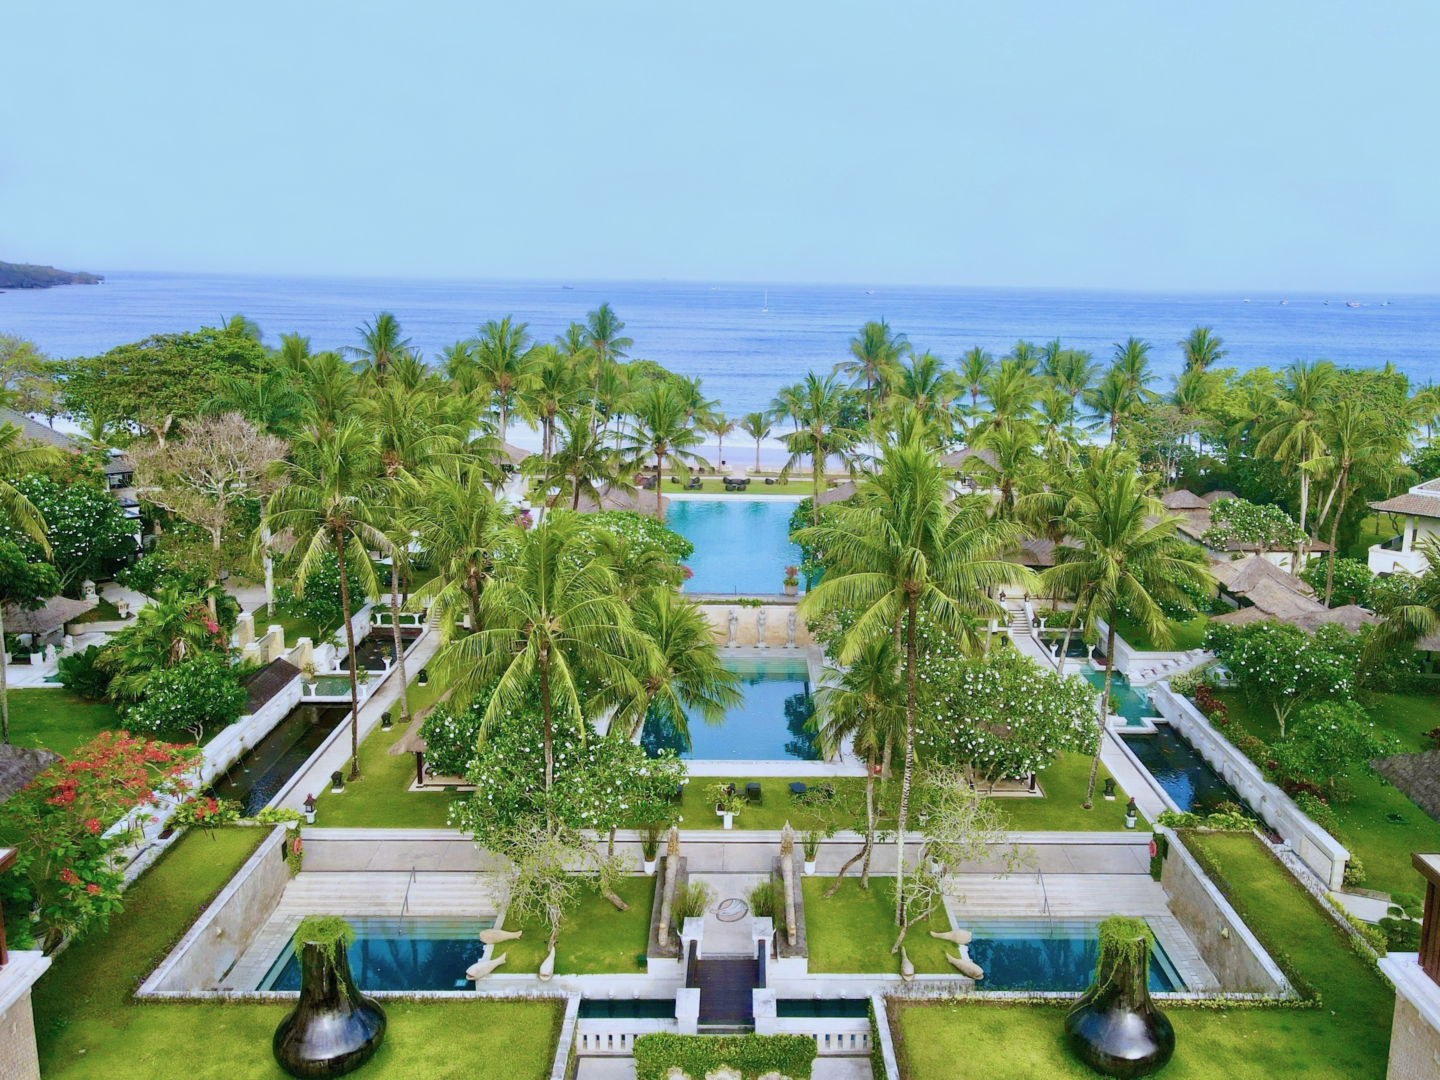 InterContinental Bali Resort - Beachfront Resort